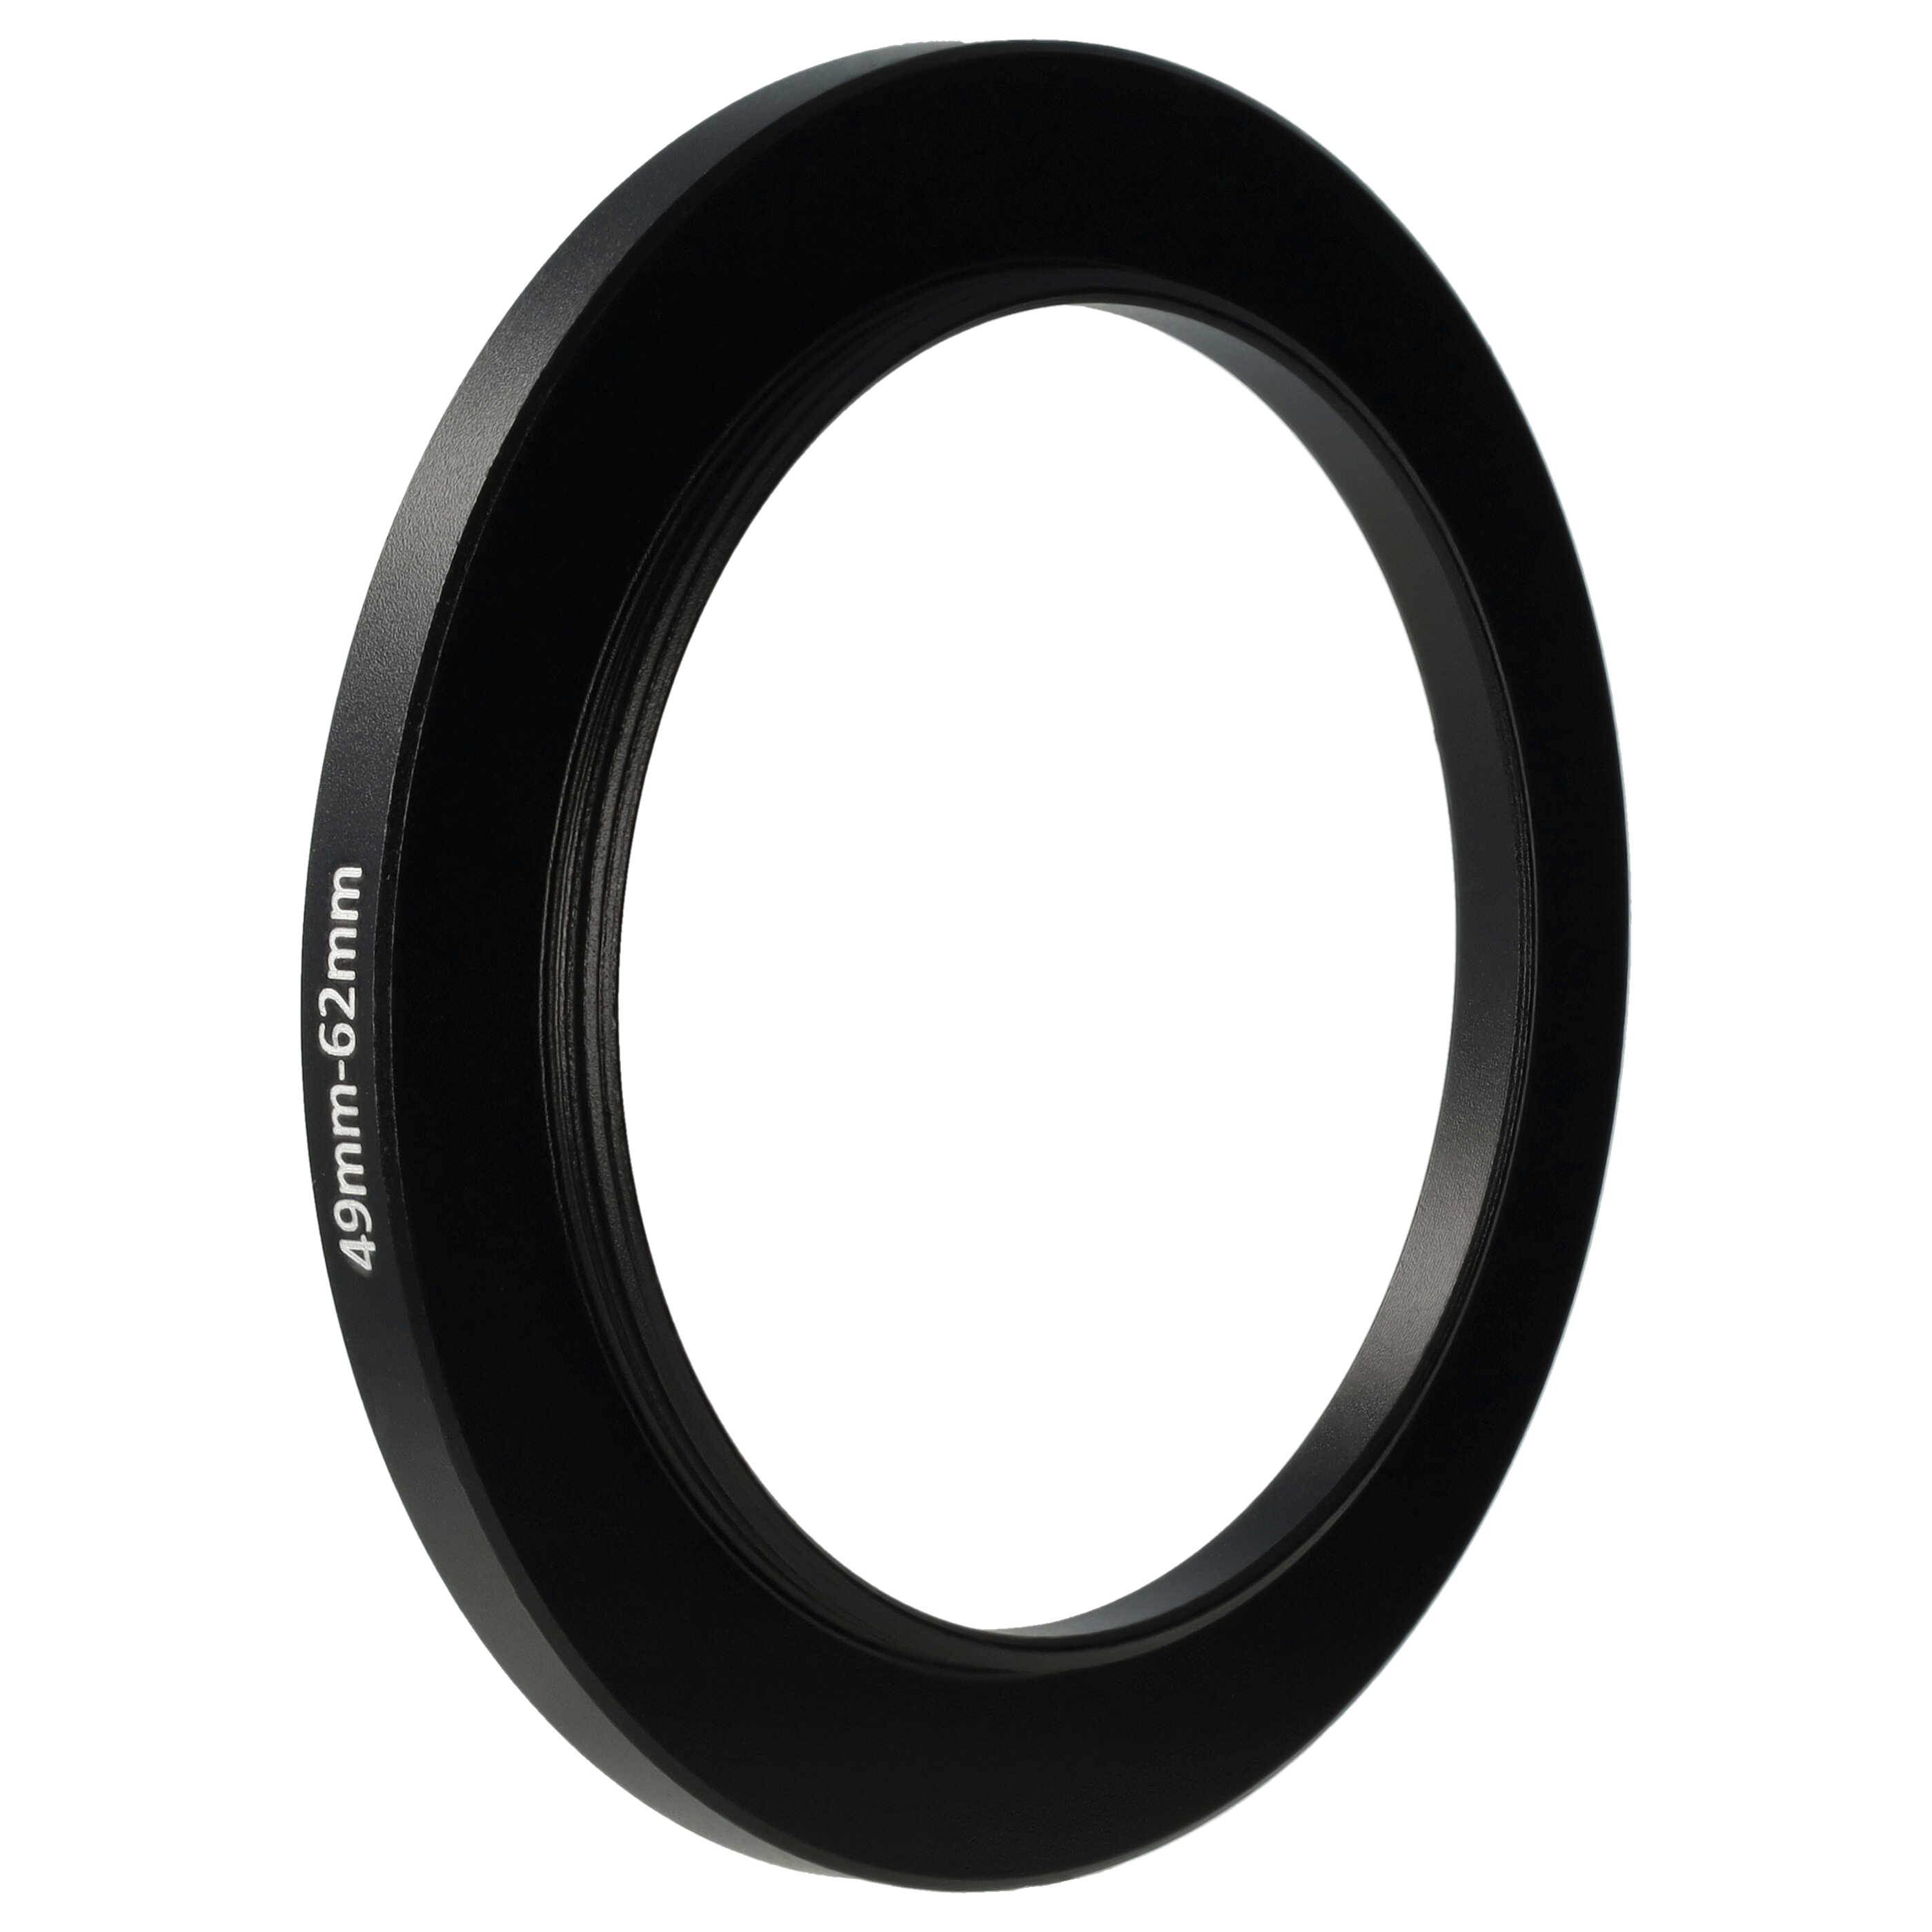 Step-Up-Ring Adapter 49 mm auf 62 mm passend für diverse Kamera-Objektive - Filteradapter